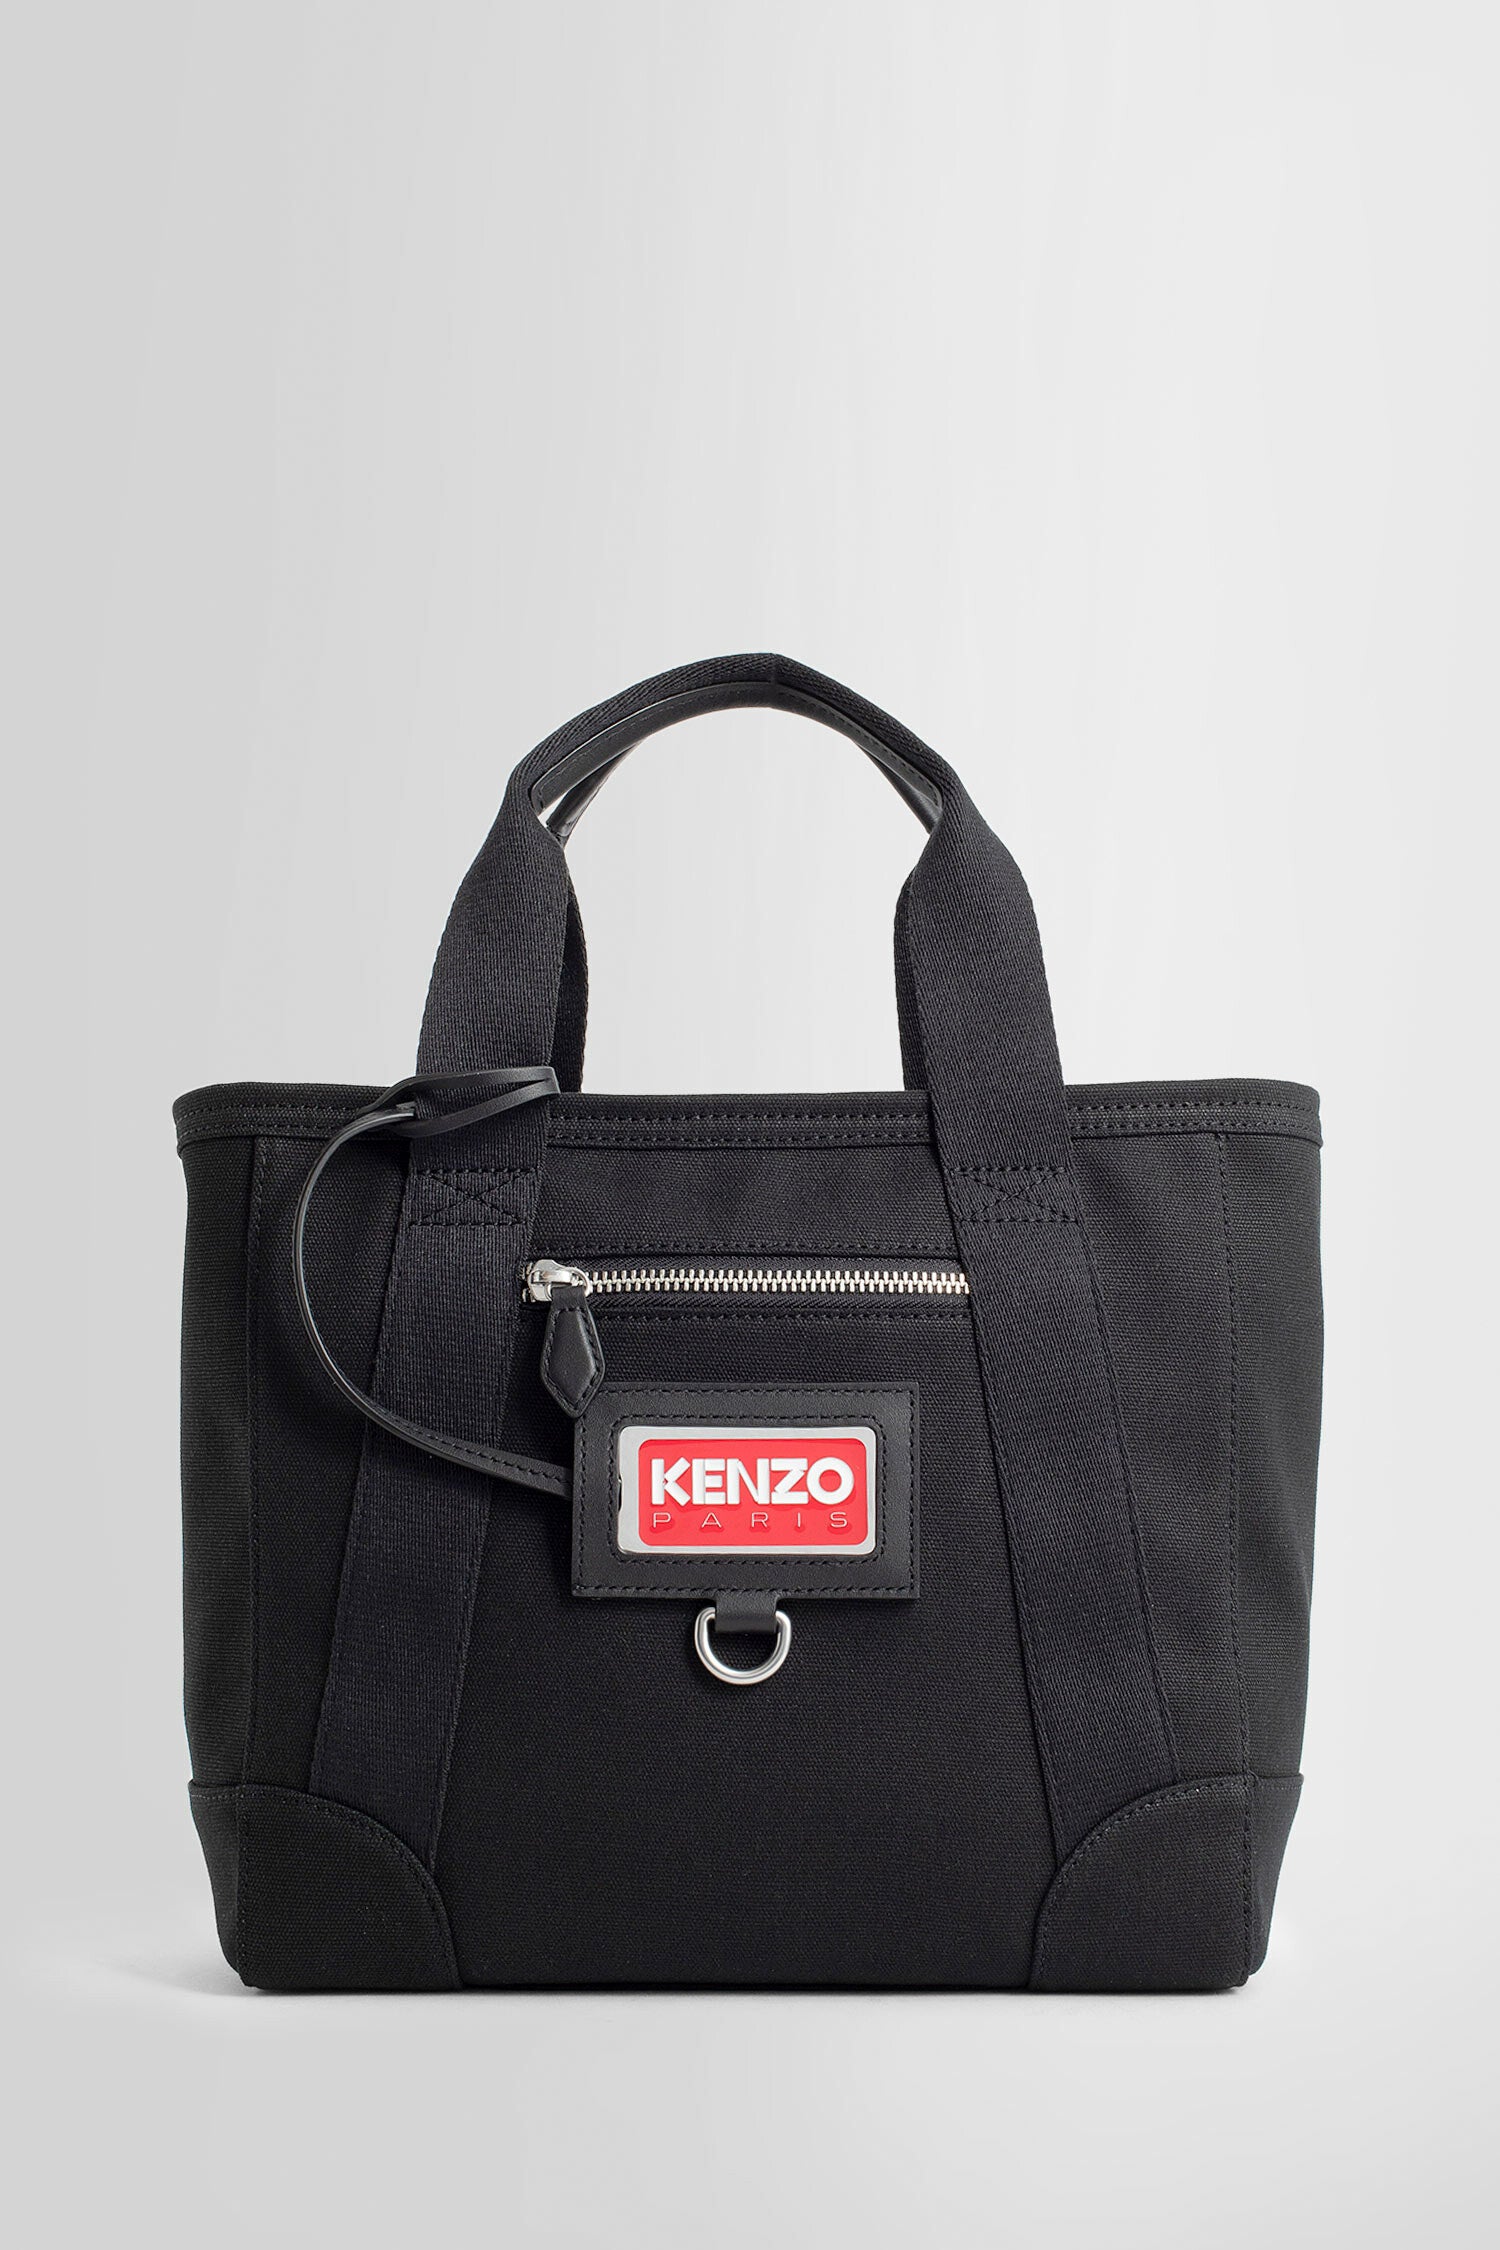 KENZO BY NIGO WOMAN BLACK TOTE BAGS - KENZO BY NIGO - TOTE BAGS